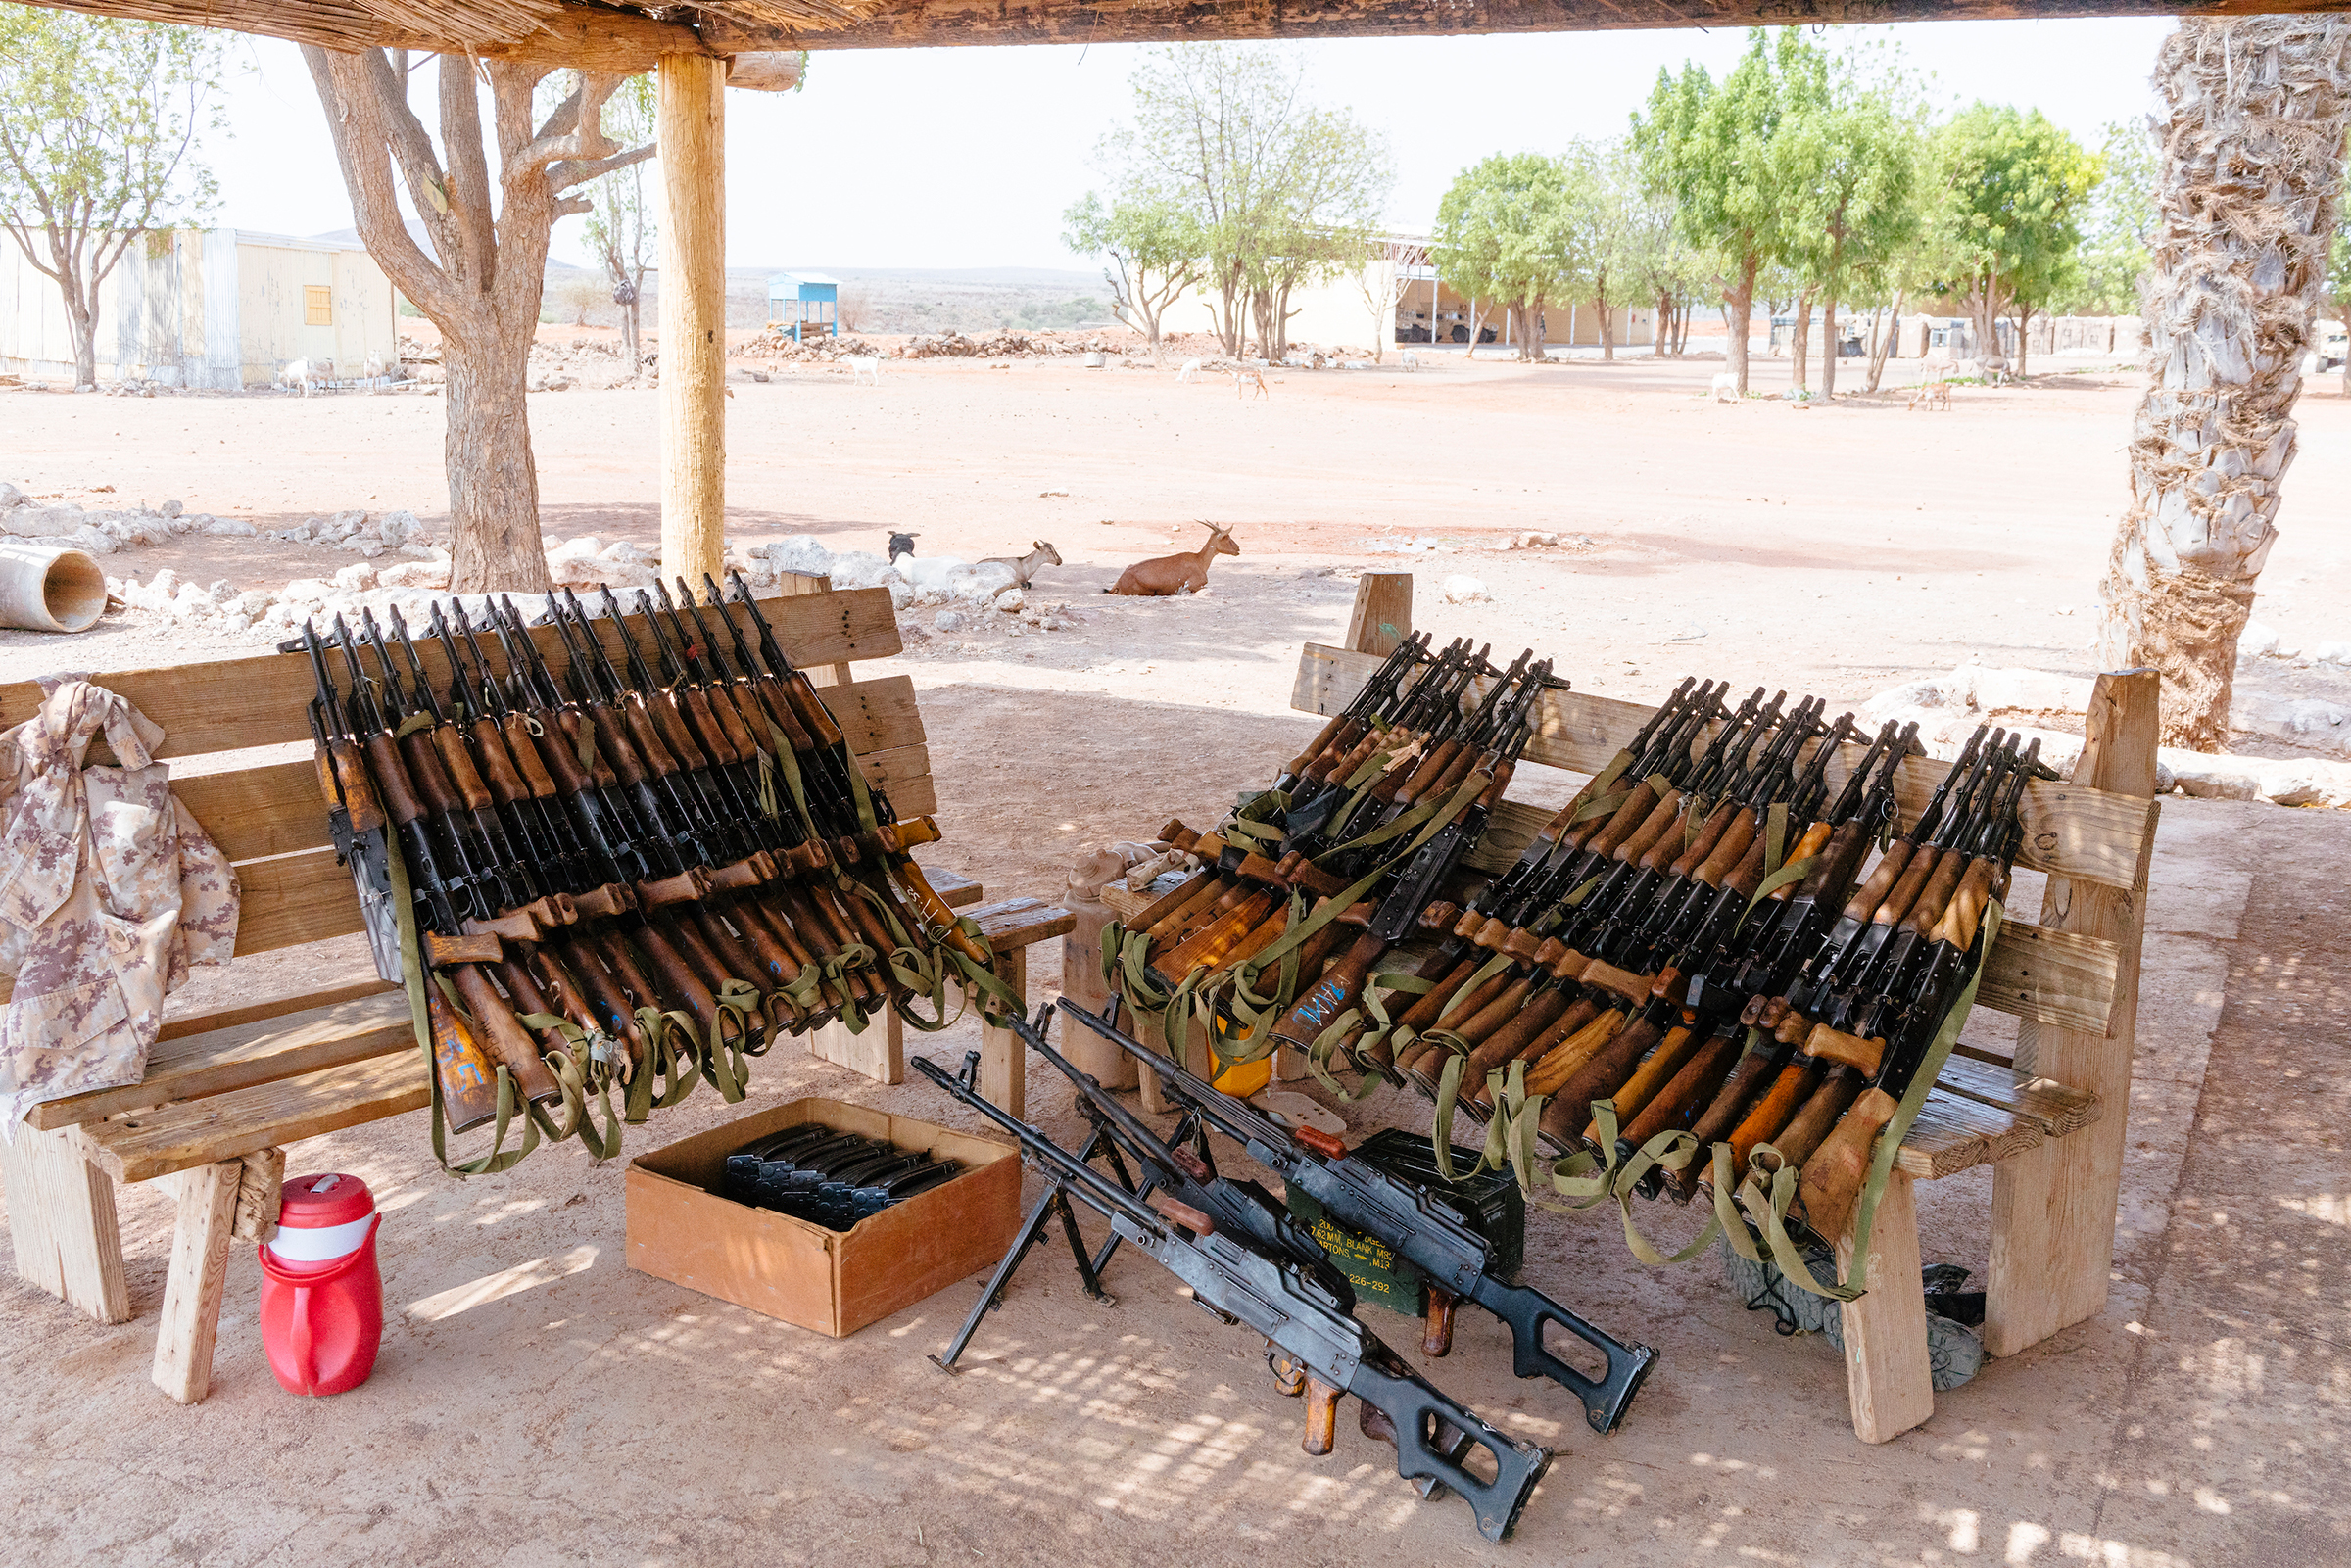 Rifles at a Djiboutian military base.